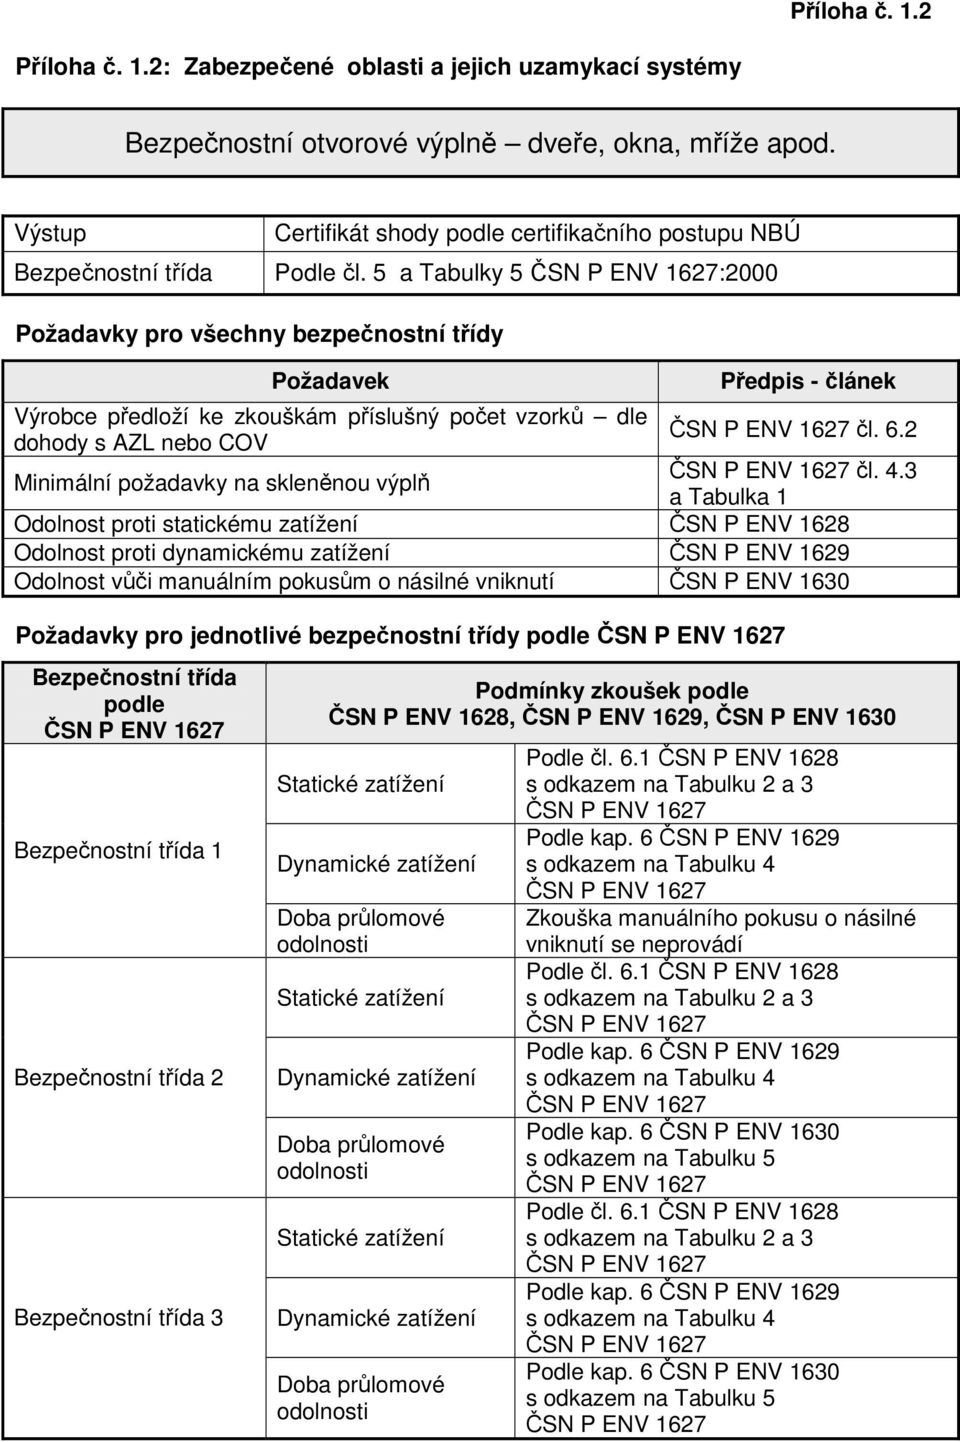 5 a Tabulky 5 ČSN P ENV 1627:2000 Požadavky pro všechny bezpečnostní třídy Výrobce předloží ke zkouškám příslušný počet vzorků dle dohody s AZL nebo COV Minimální požadavky na skleněnou výplň Předpis